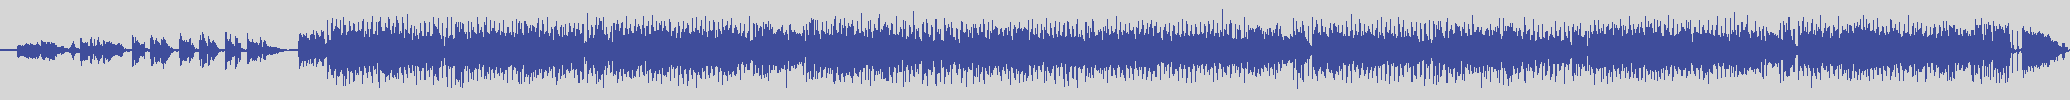 digiphonic_records [DPR013] Little Tony - Quando Vedrai La Mia Ragazza [Original Mix] audio wave form